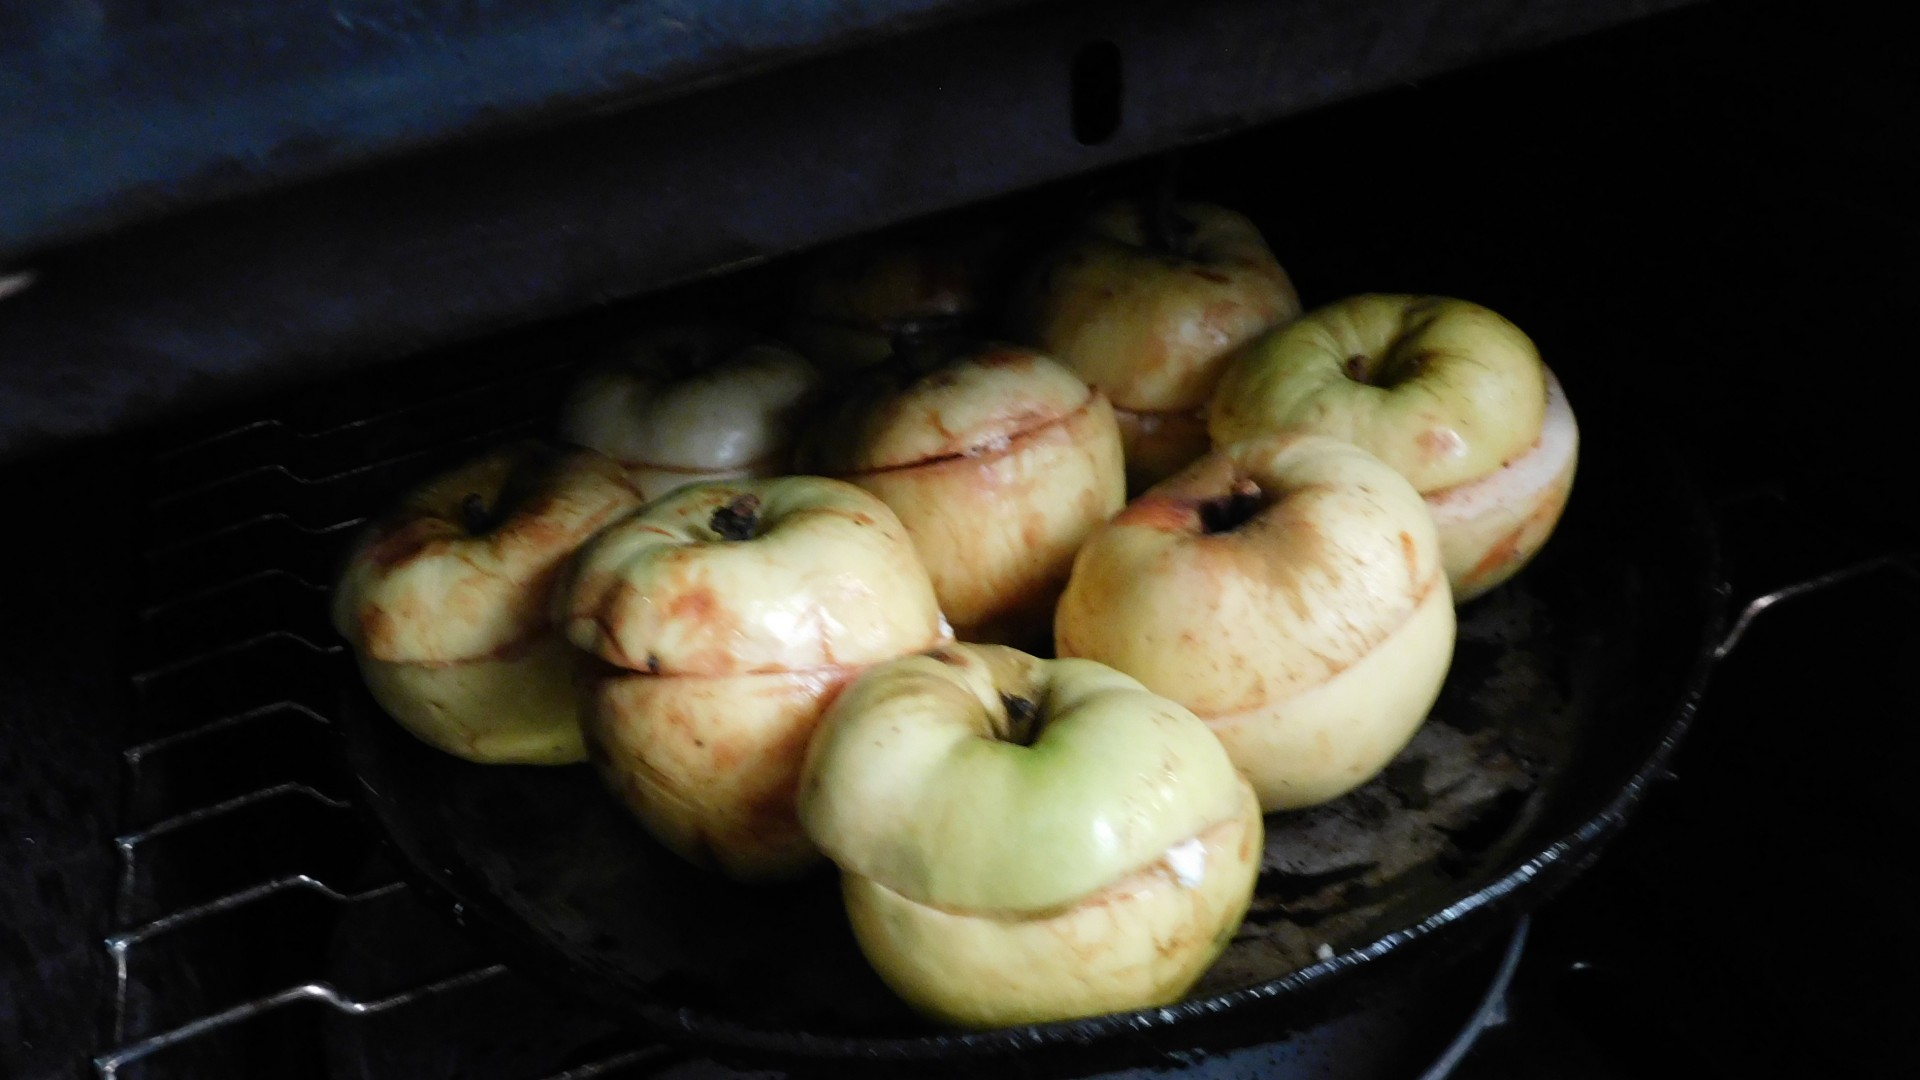 Яблоки сорта Антоновка готовы для запекания в духовке